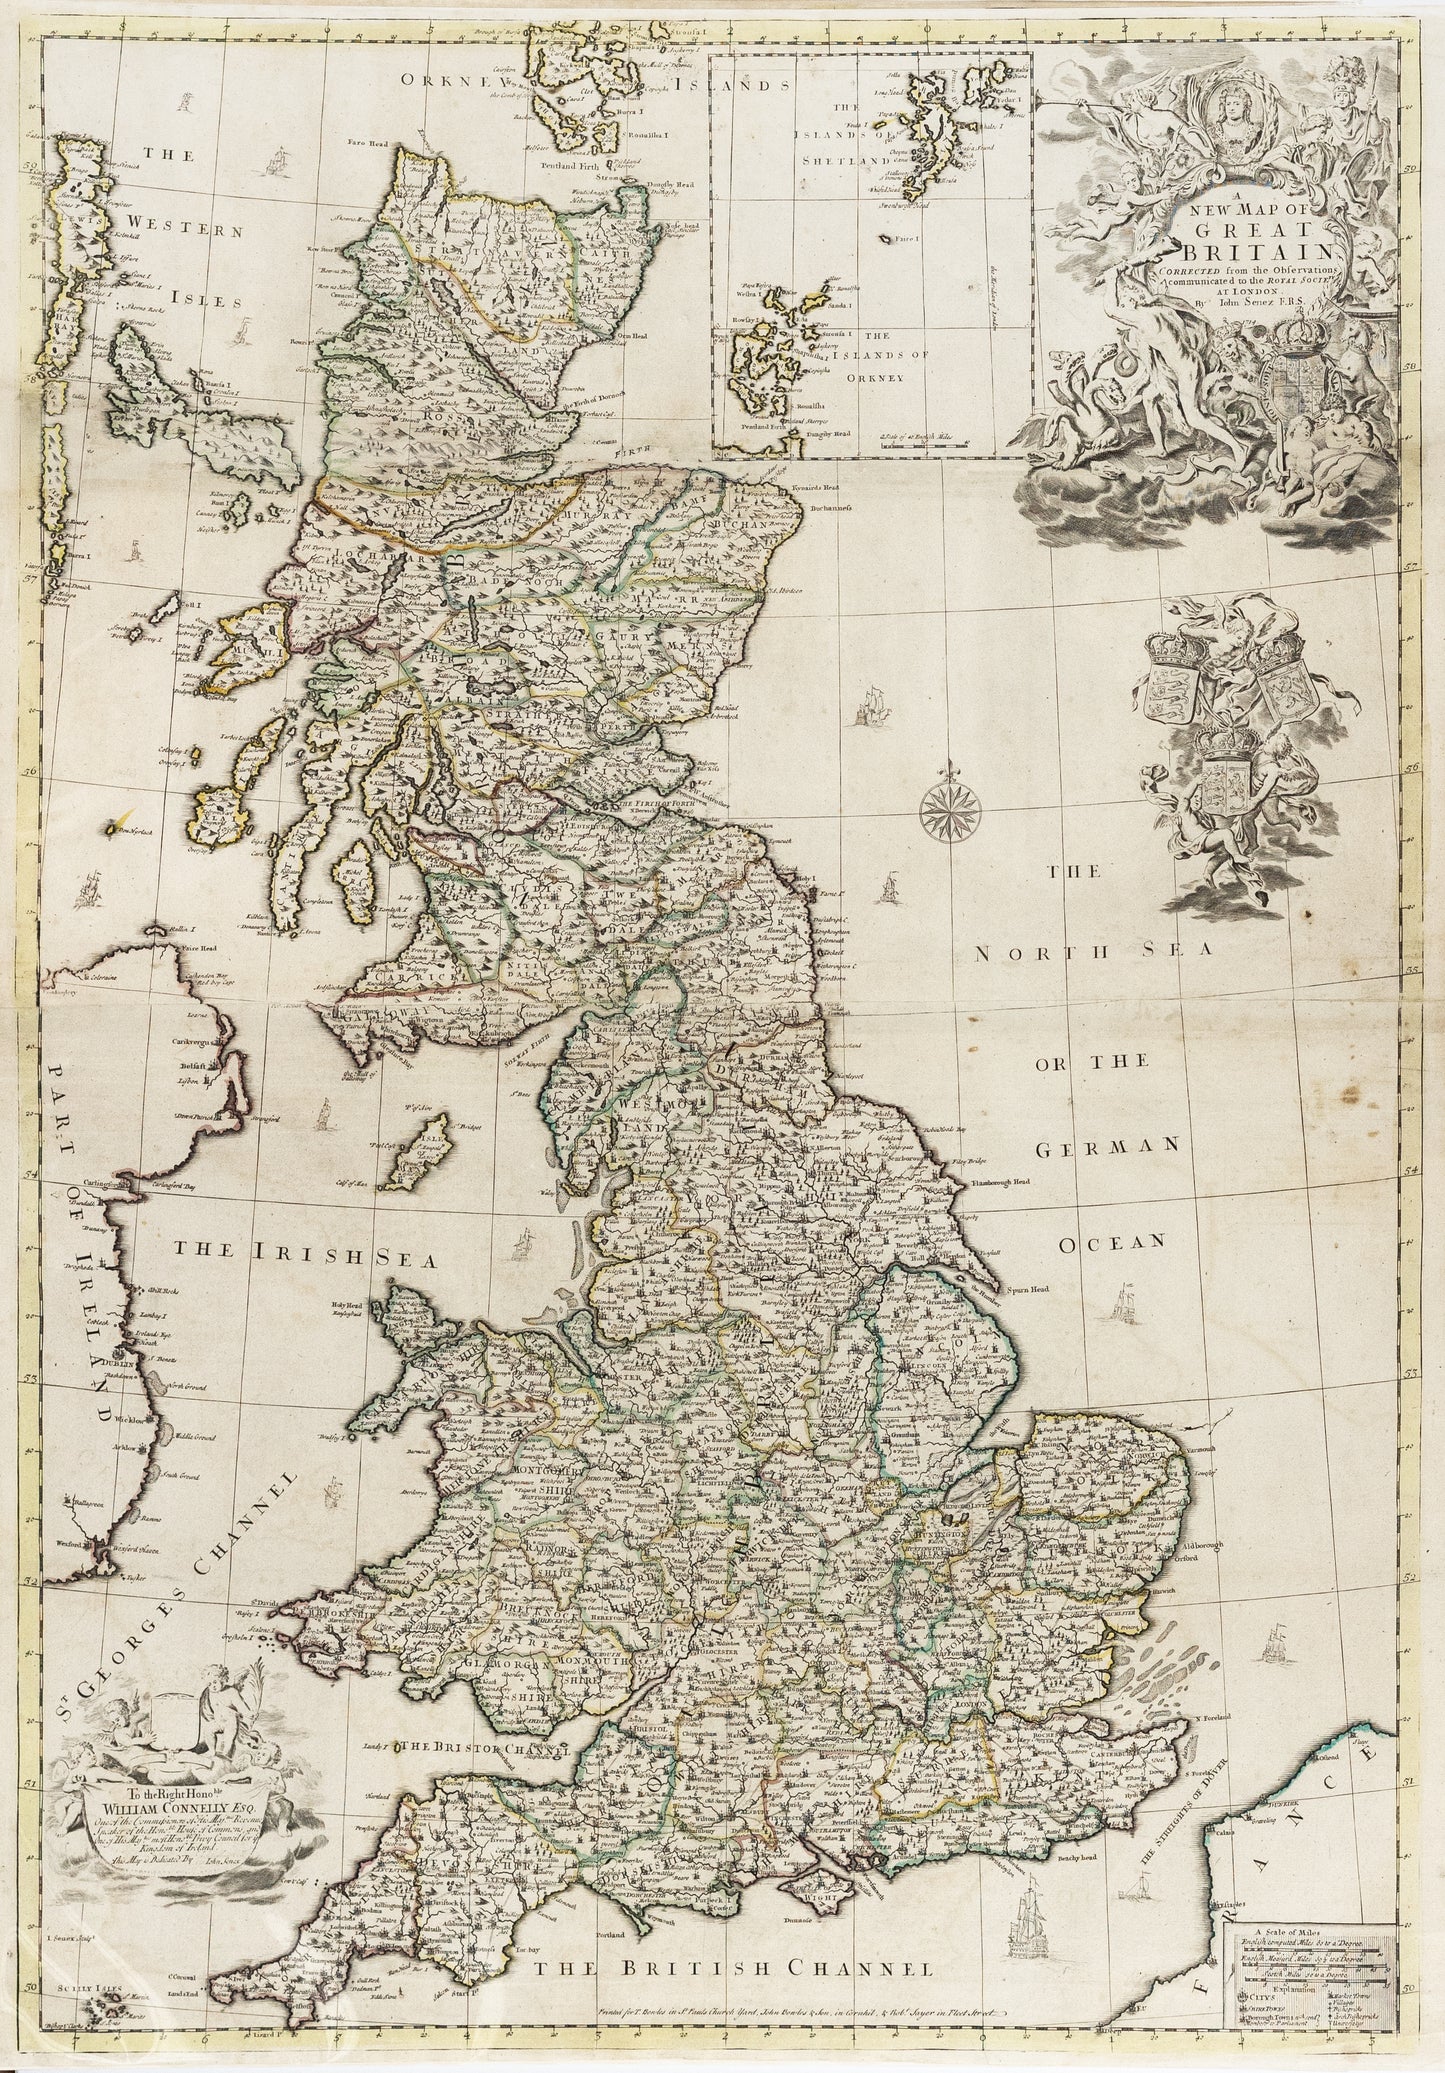 Senex, John. A New Map of Great Britain. London: 1721